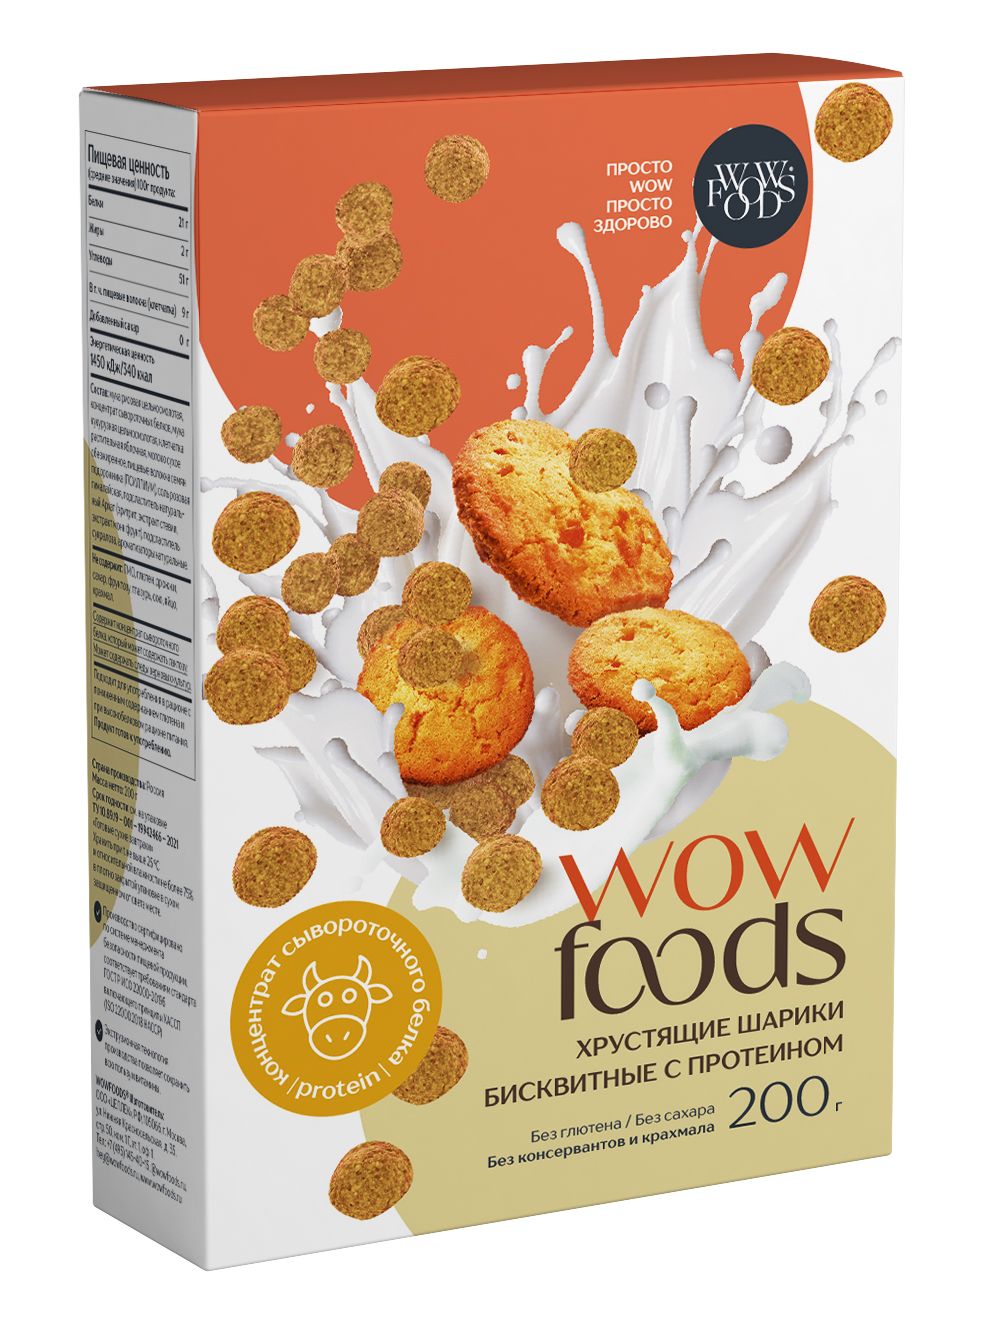 Хрустящие шарики WOWFOODS бисквитные с протеином, без глютена, без сахара, 200 г